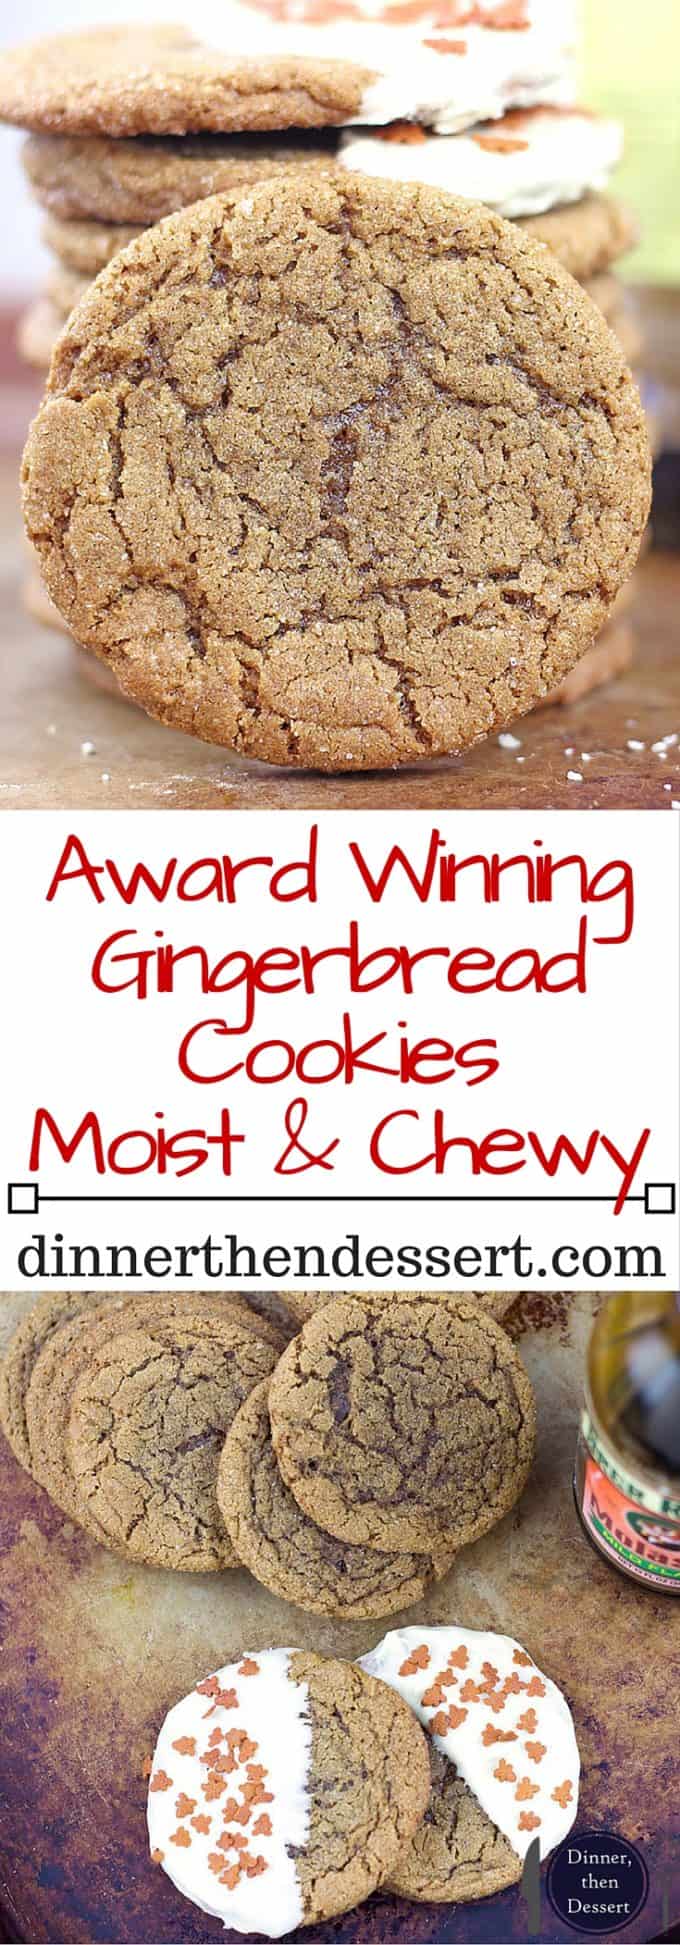 Award Winning Gingerbread Cookies Recipe Dinner Then Dessert